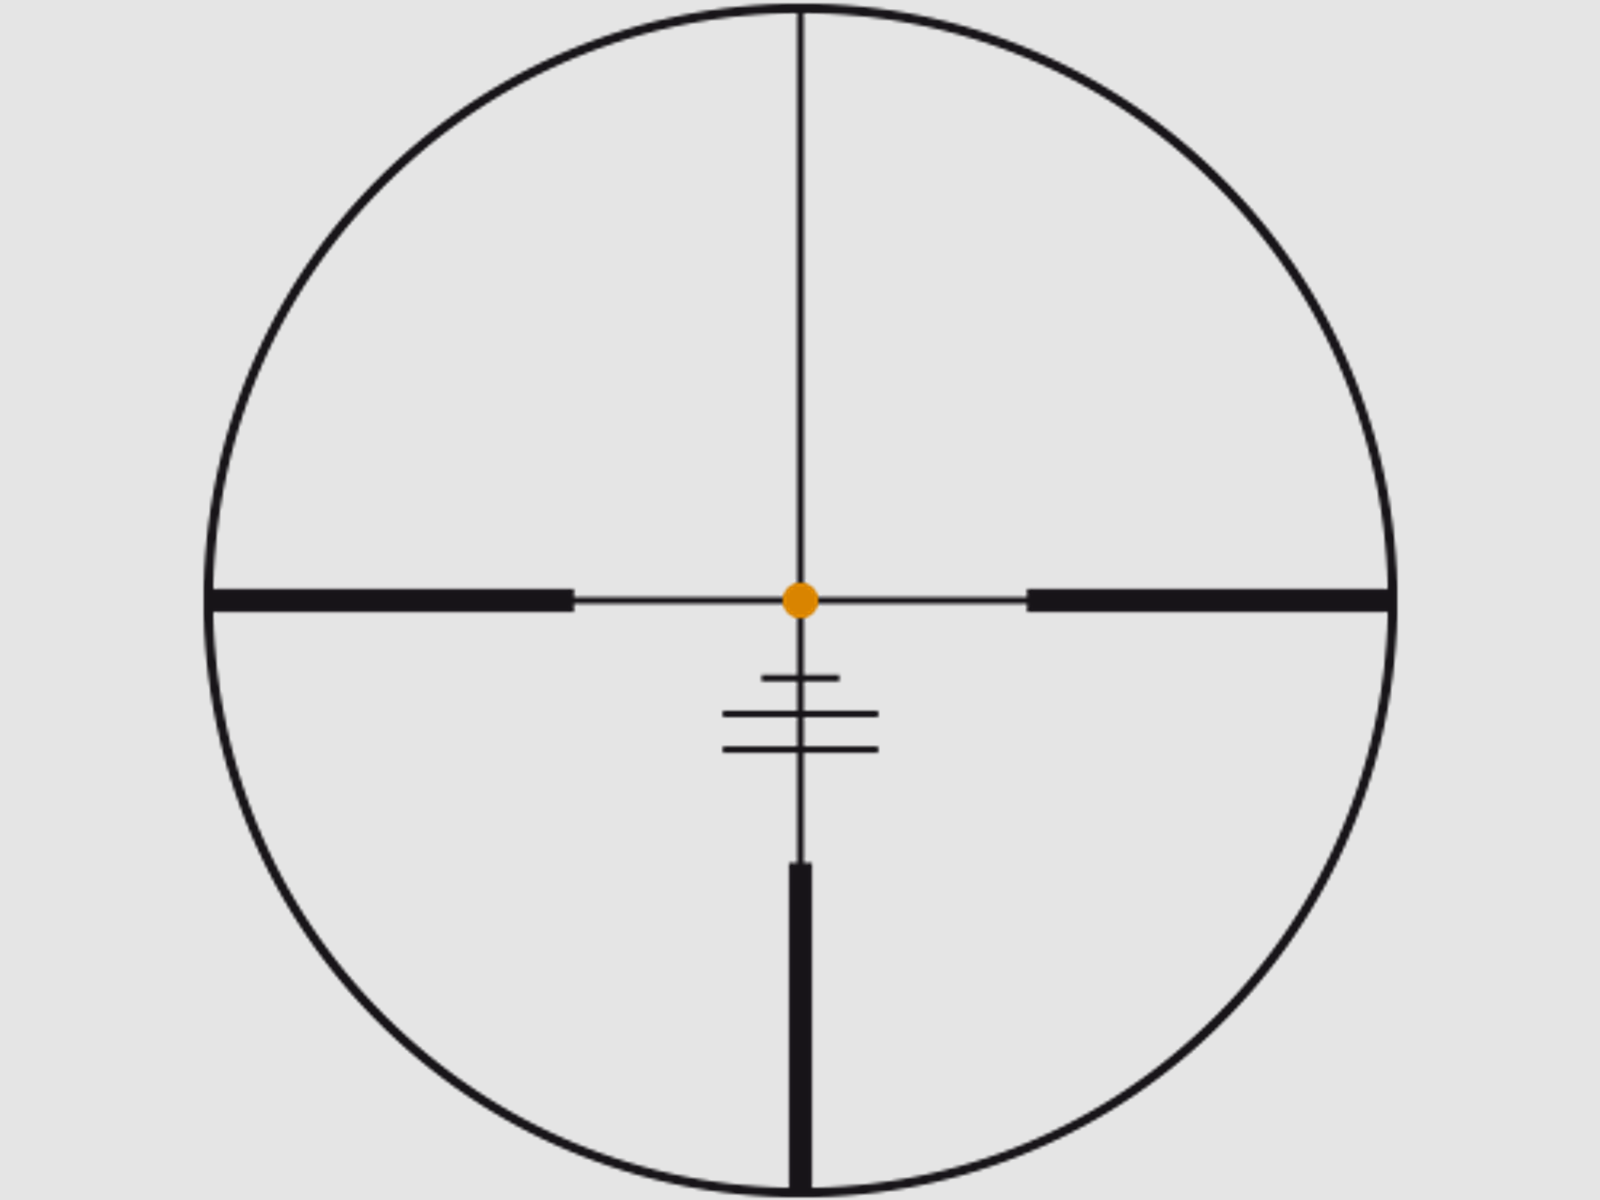 SWAROVSKI Zielfernrohr mit Leuchtabsehen 2-12x50 Z6i L (30mm) II Abs. 4A-I/4A300I/BRXI